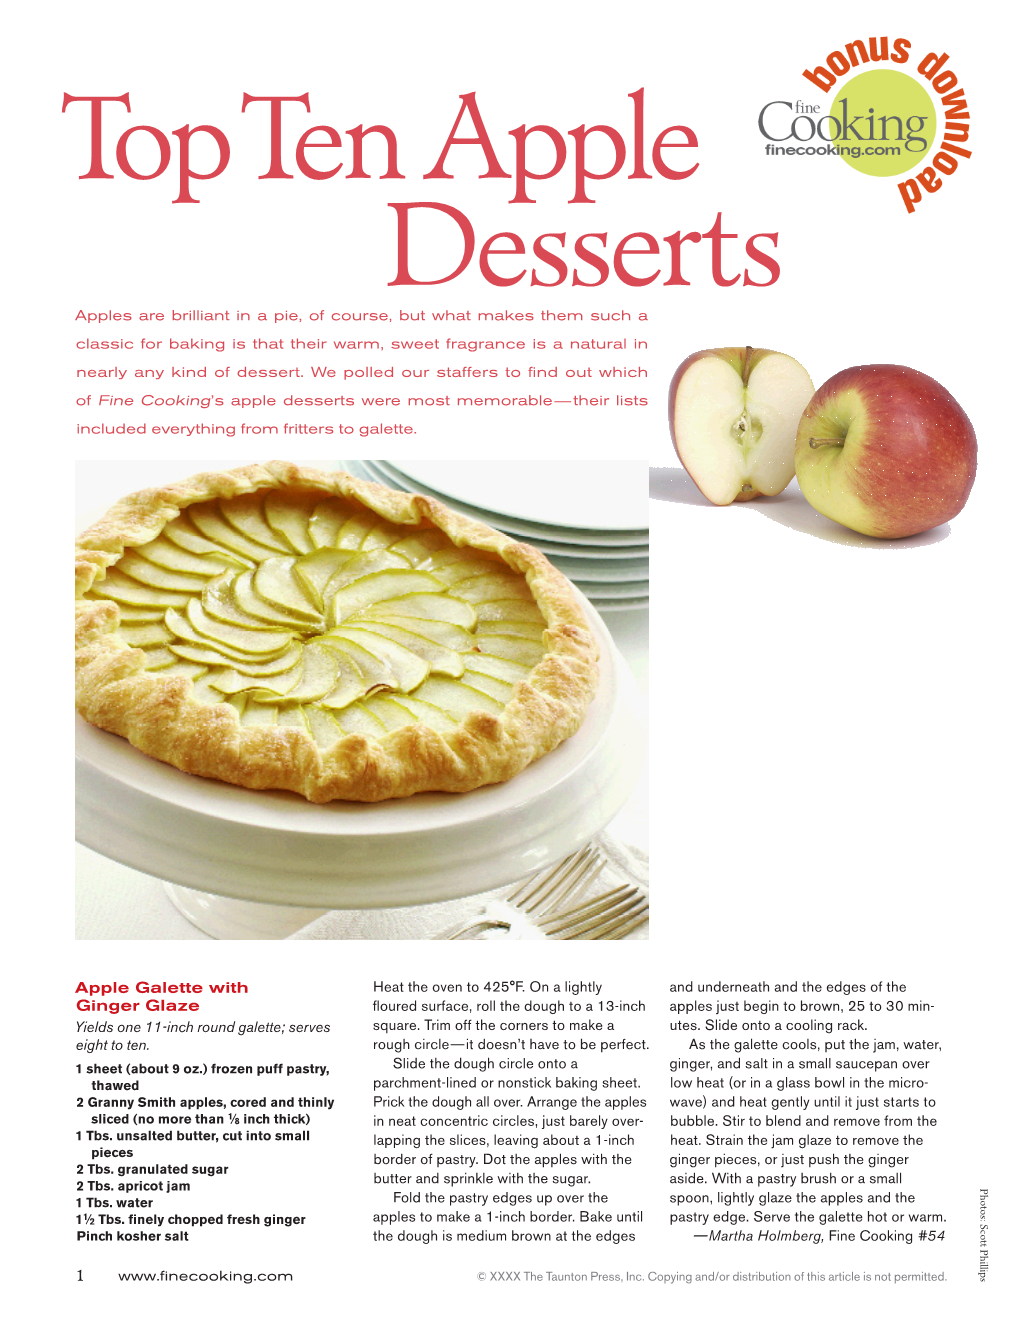 Top Ten Apple Desserts